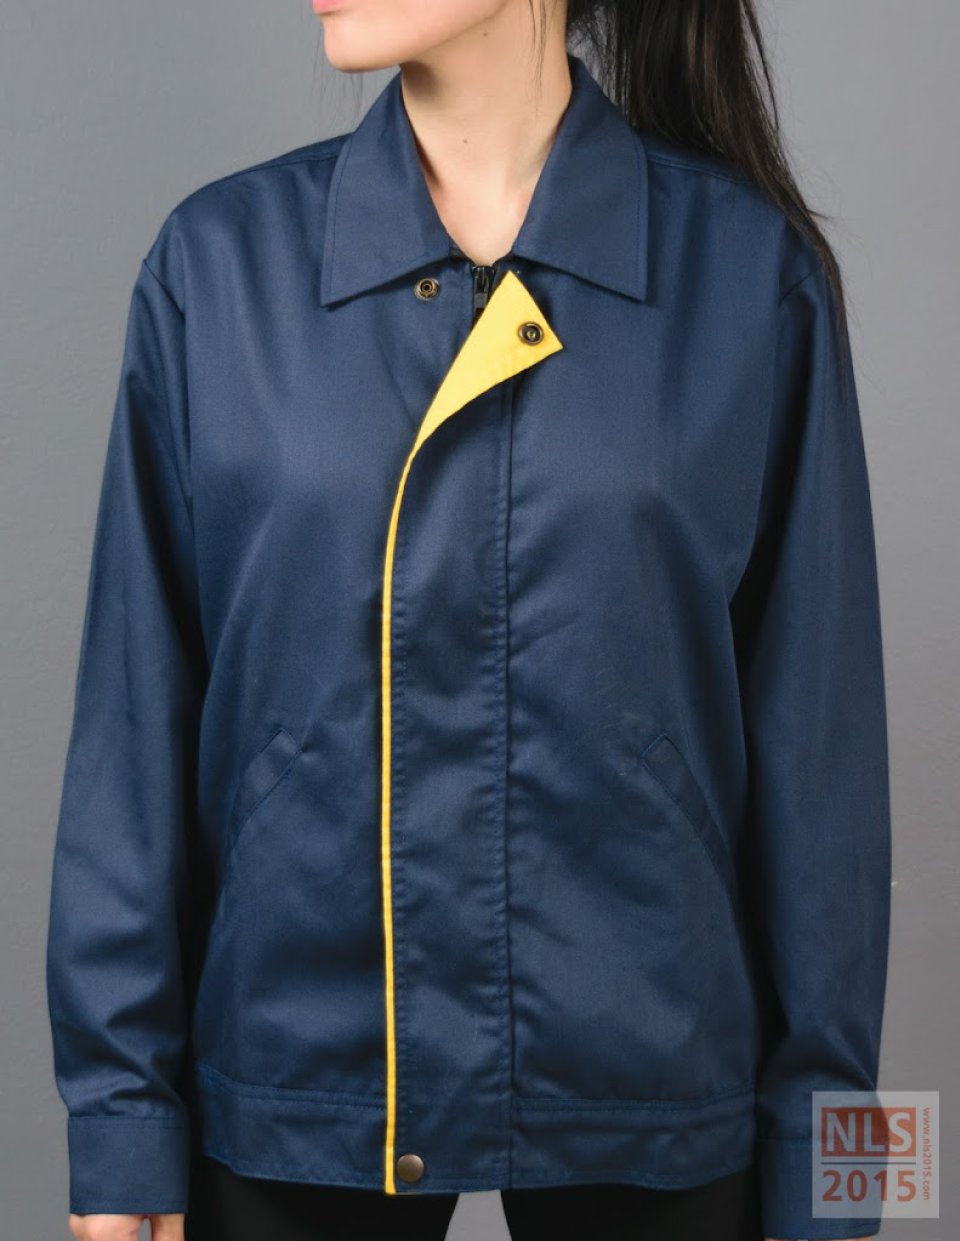 นลินสิริ 2015 จำกัด รับตัด รับผลิตเสื้อแจ็คเก็ตพนักงาน เสื้อแจ็คเก็ตบริษัทรูปที่ 